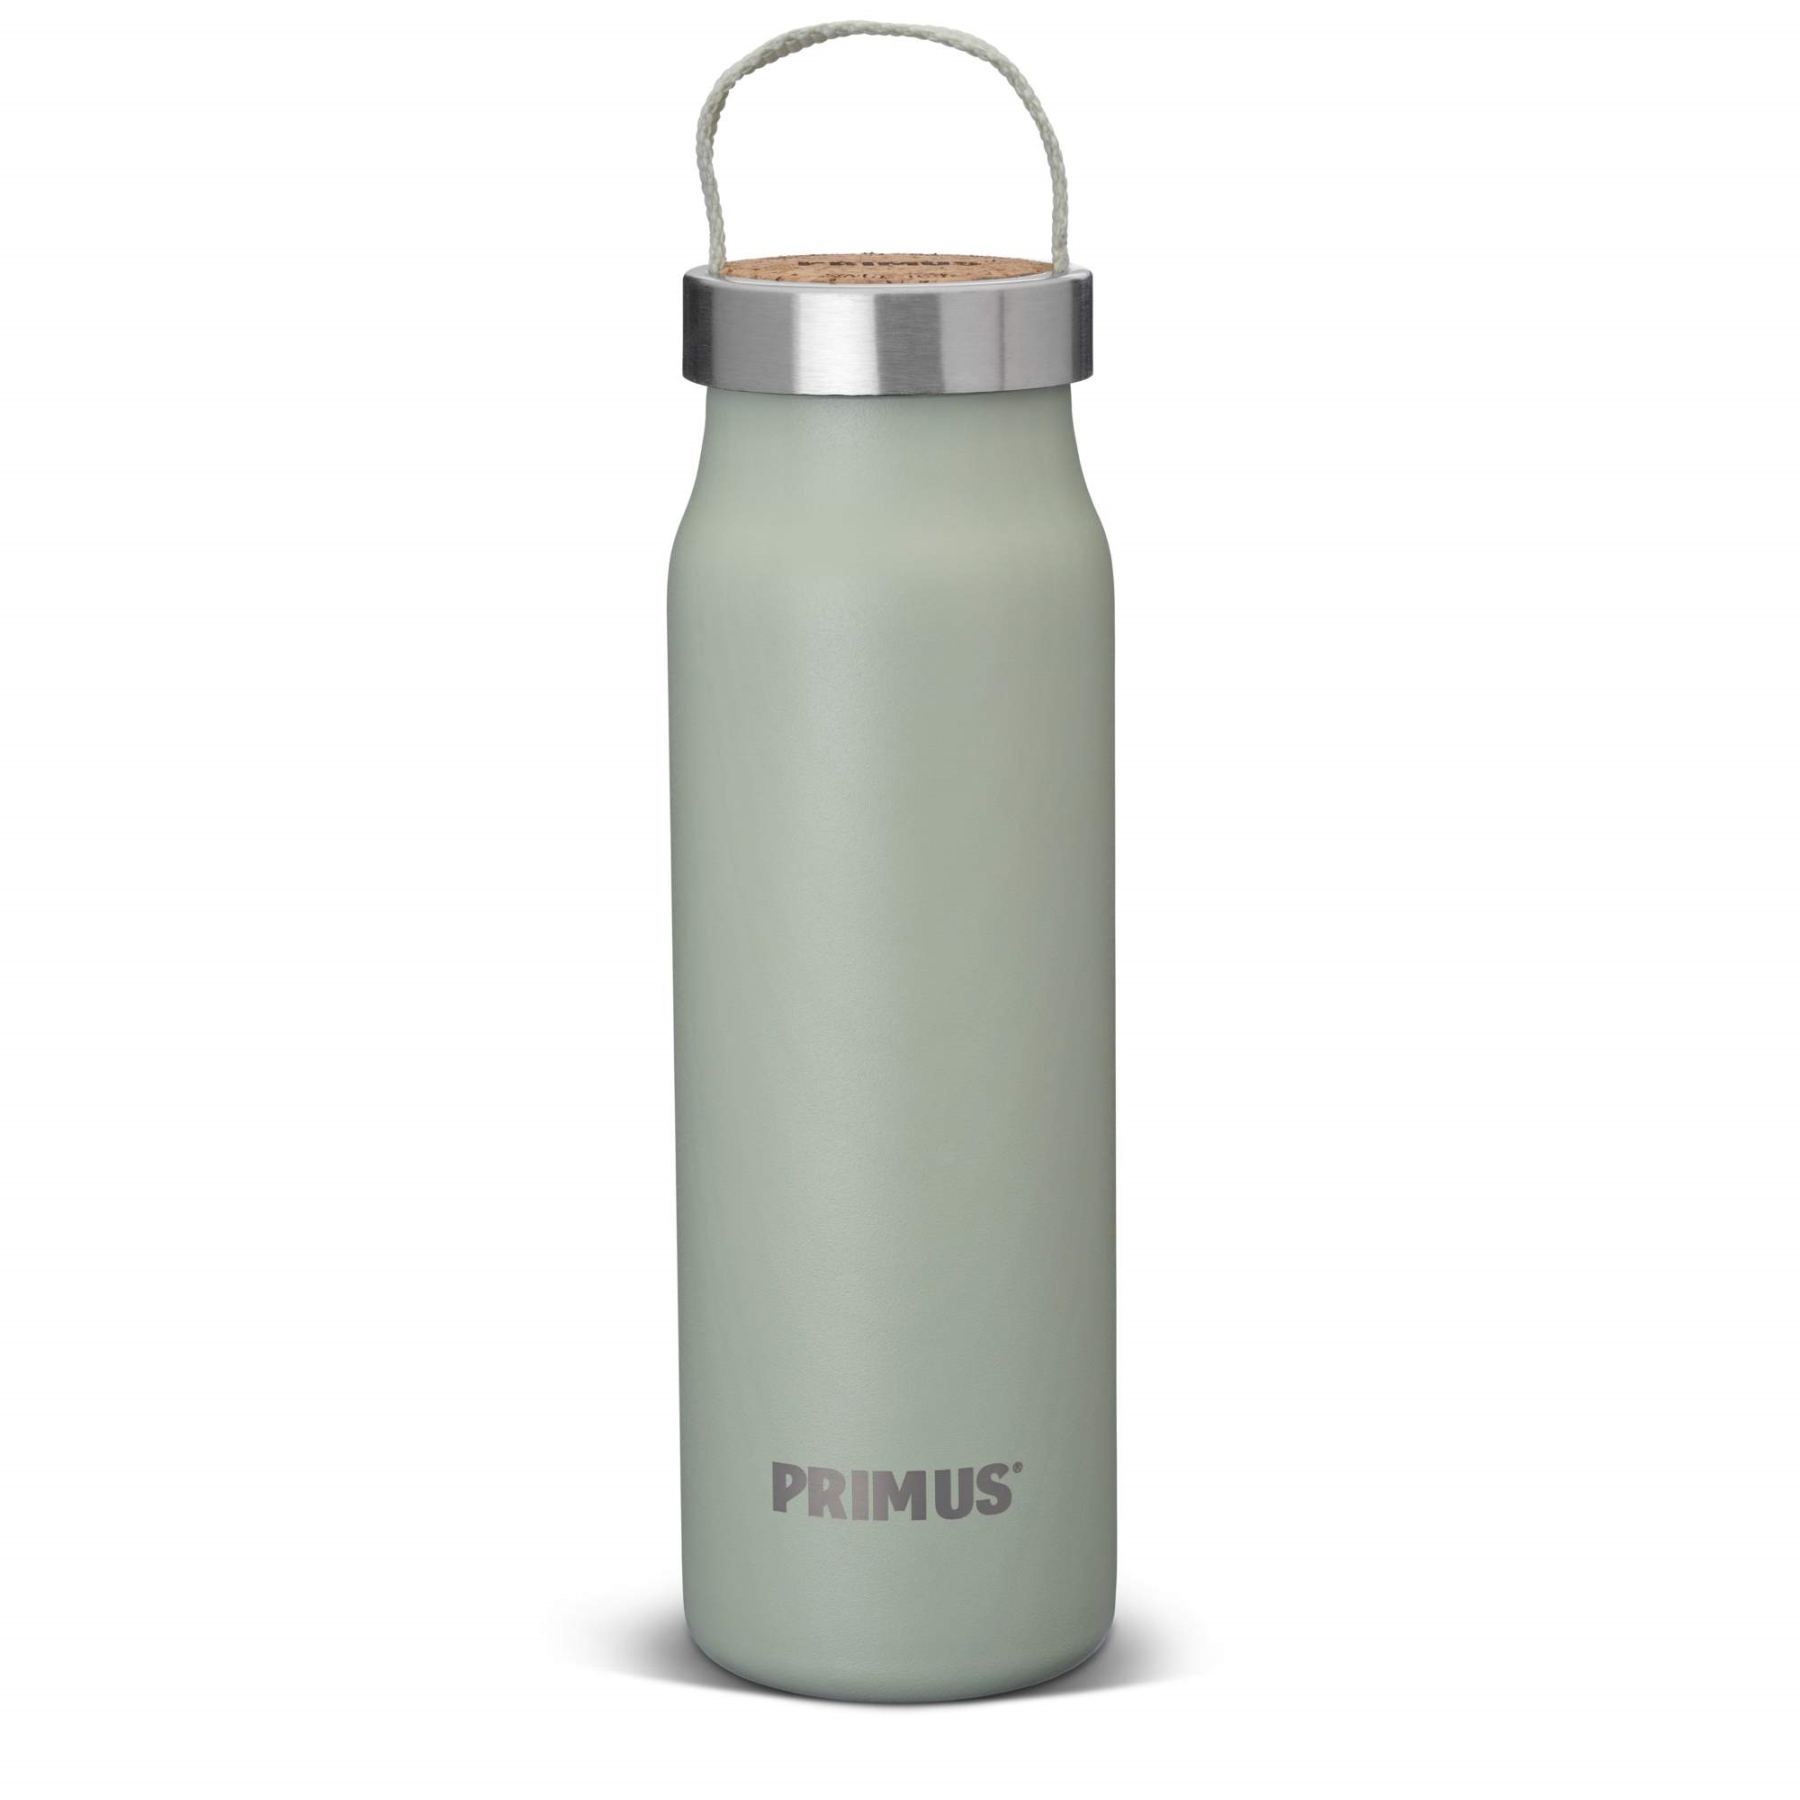 Produktbild von Primus Klunken Vakuum Trinkflasche 0.5 L - mint